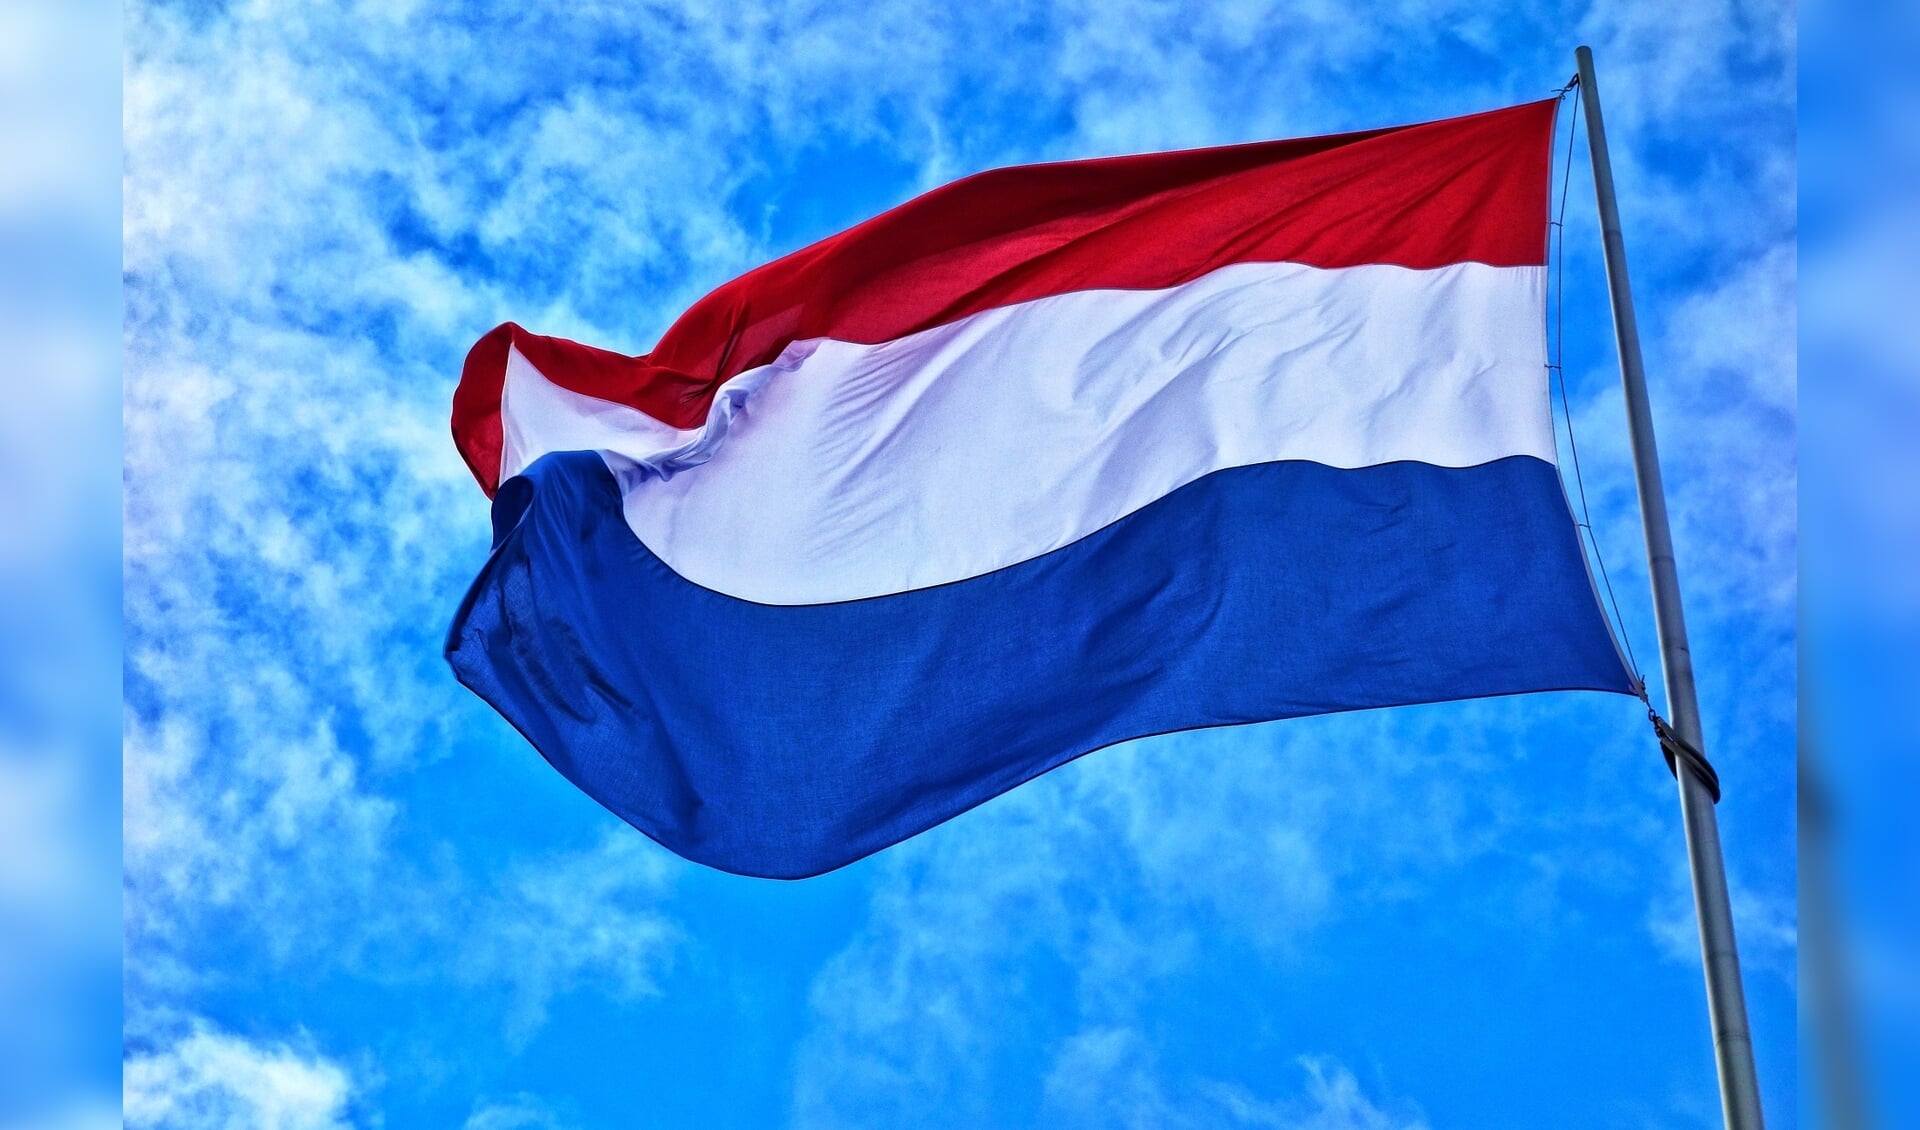 De Nederlandse vlag.